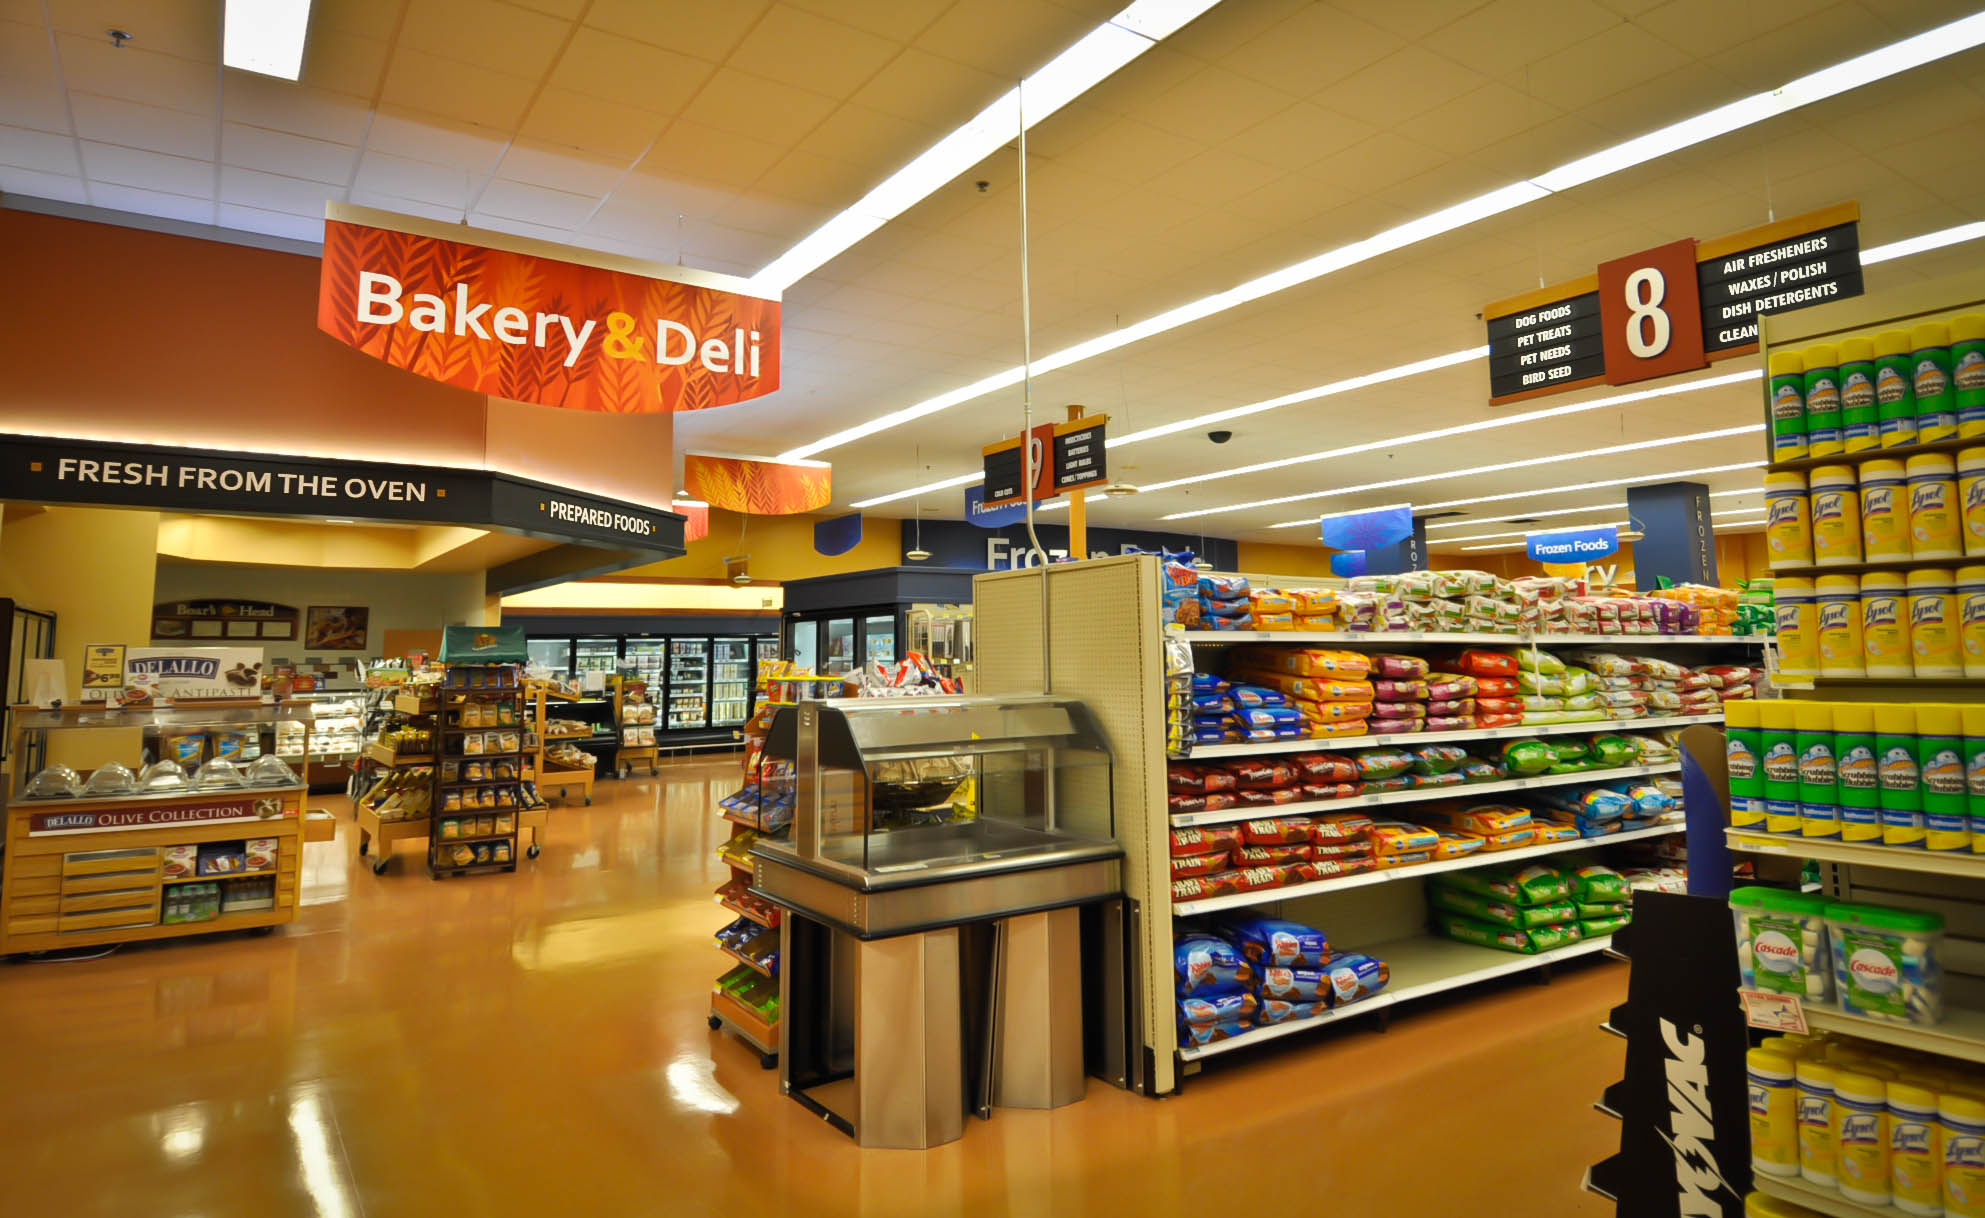 Market Bakery & Deli Area Grocery Store Decor Design Interior